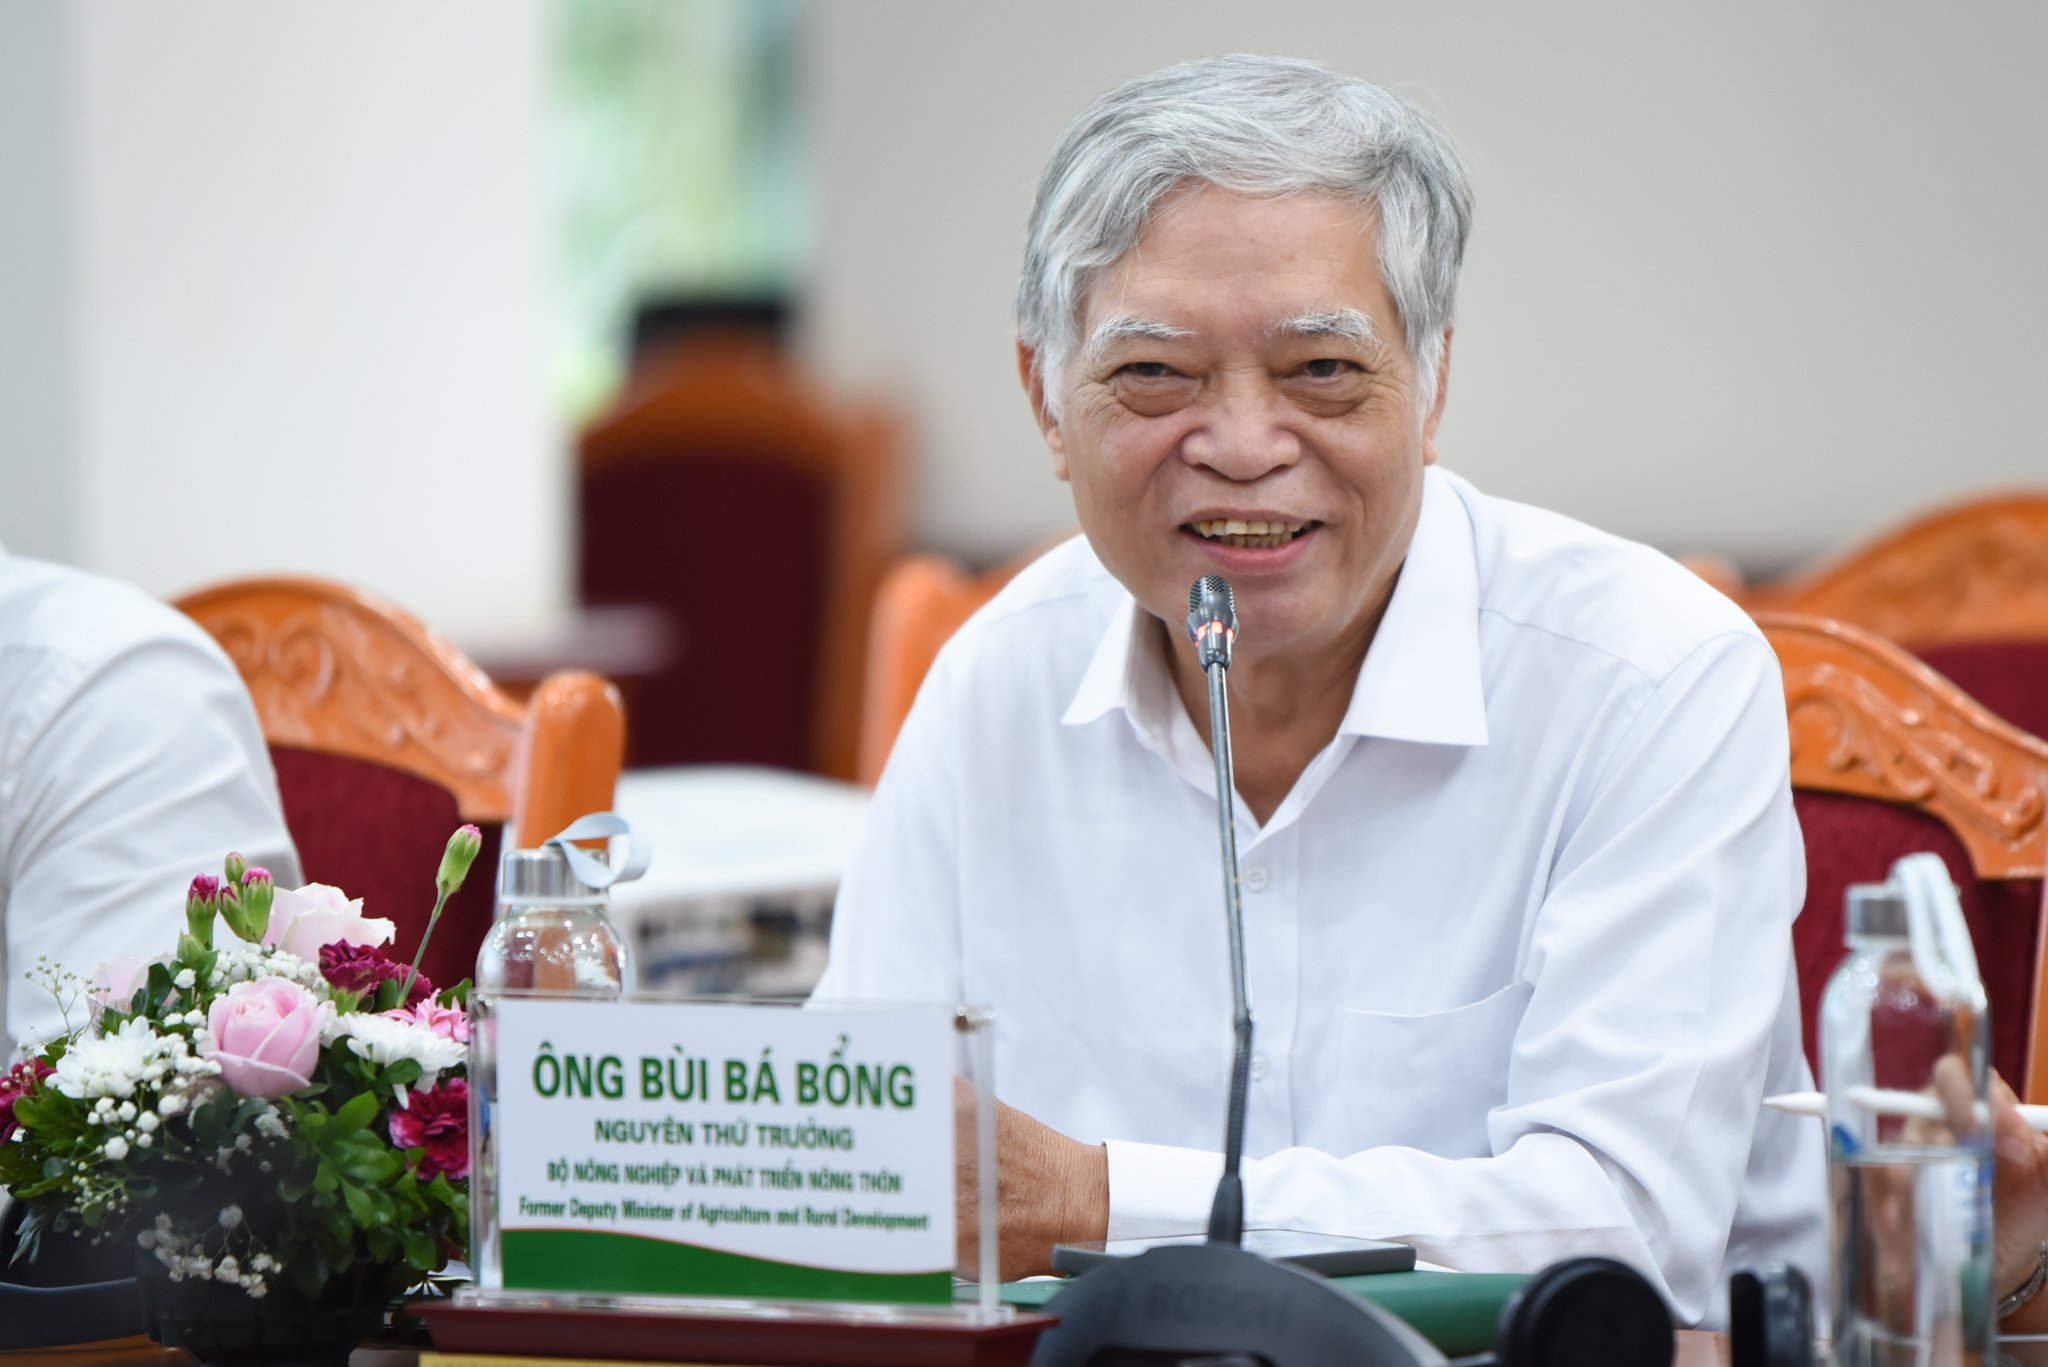 PGS.TS Bùi Bá Bổng, nguyên Thứ trưởng Bộ NN-PTNT đóng góp ý kiến về kế hoạch hành động thực hiện chiến lược tăng trưởng xanh. Ảnh: Tùng Đinh.